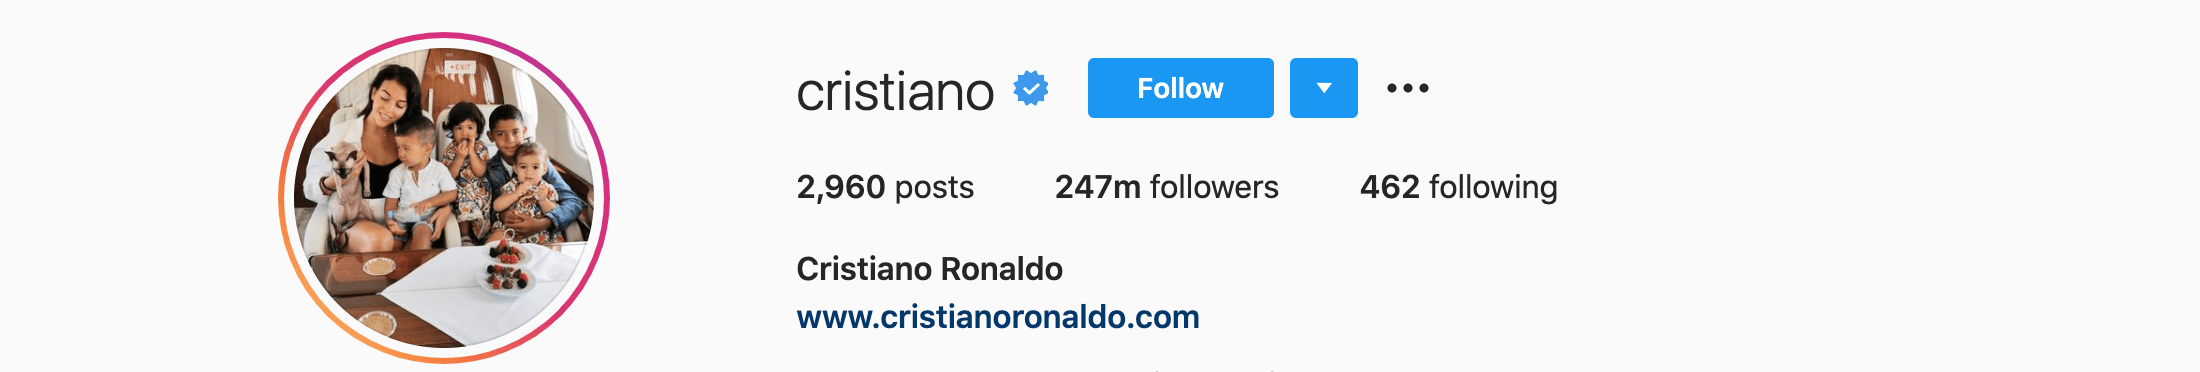 Top Instagram Influencers - CRISTIANO RONALDO